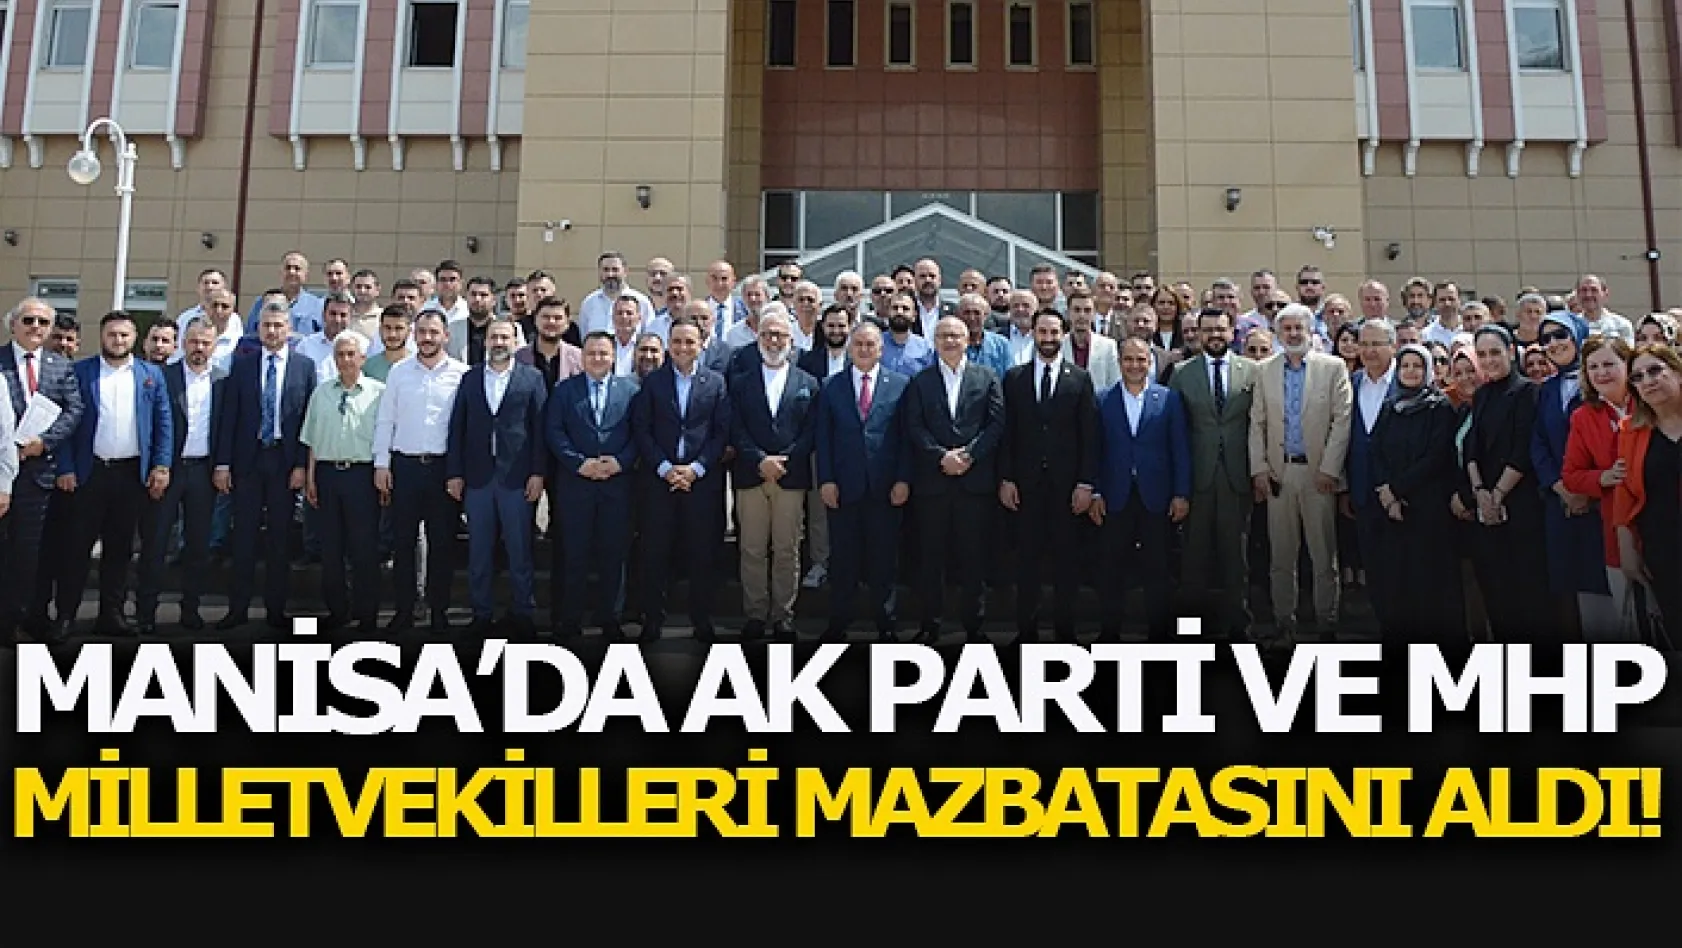 Manisa'da AK Parti ve MHP Milletvekilleri Mazbatasını Aldı!